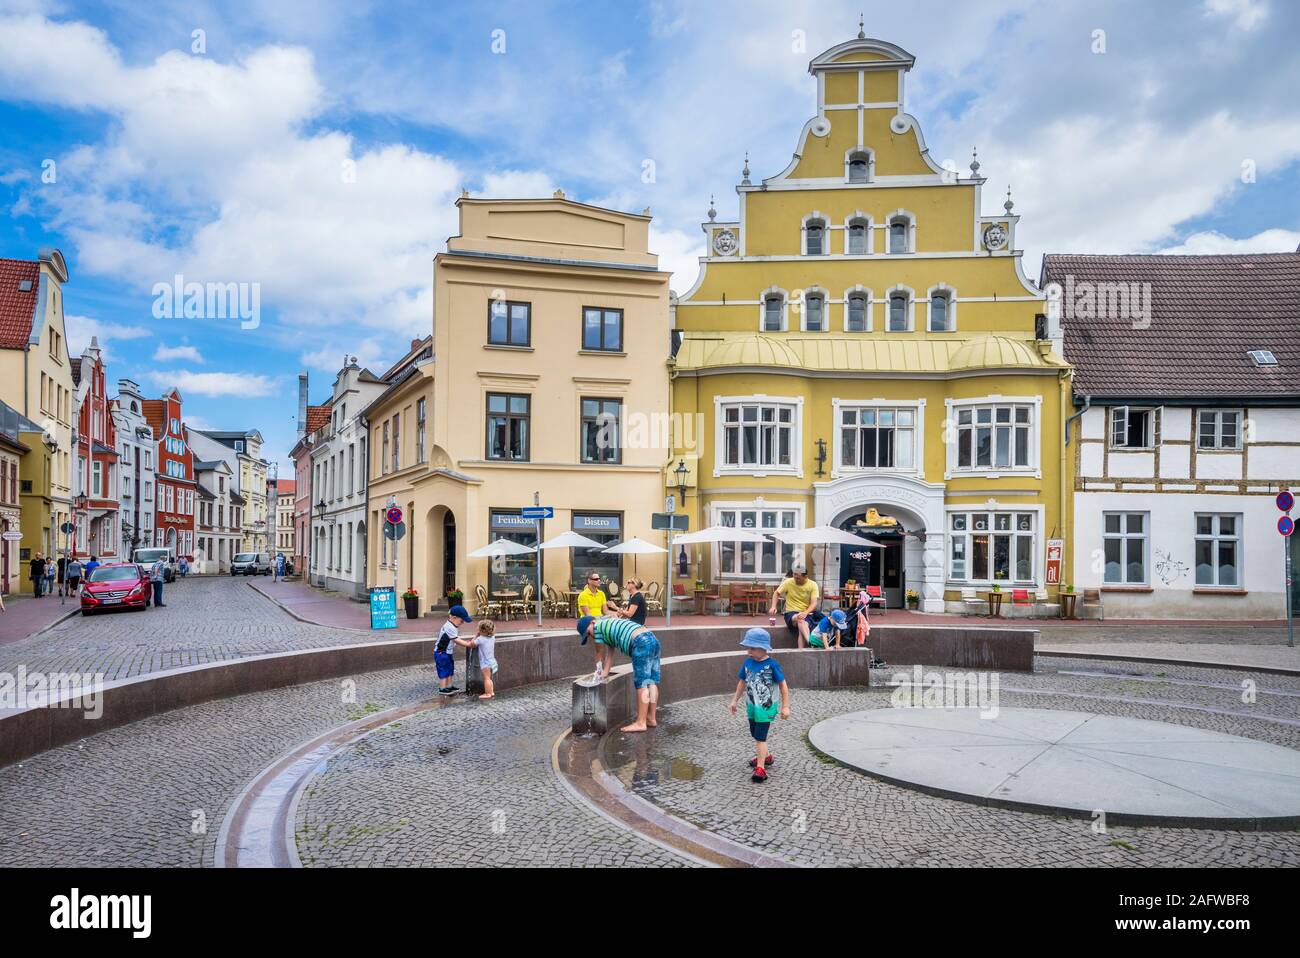 Fontaine dans le centre historique de la ville hanséatique de Wismar, Mecklenburg-Vorpommern, Allemagne Banque D'Images